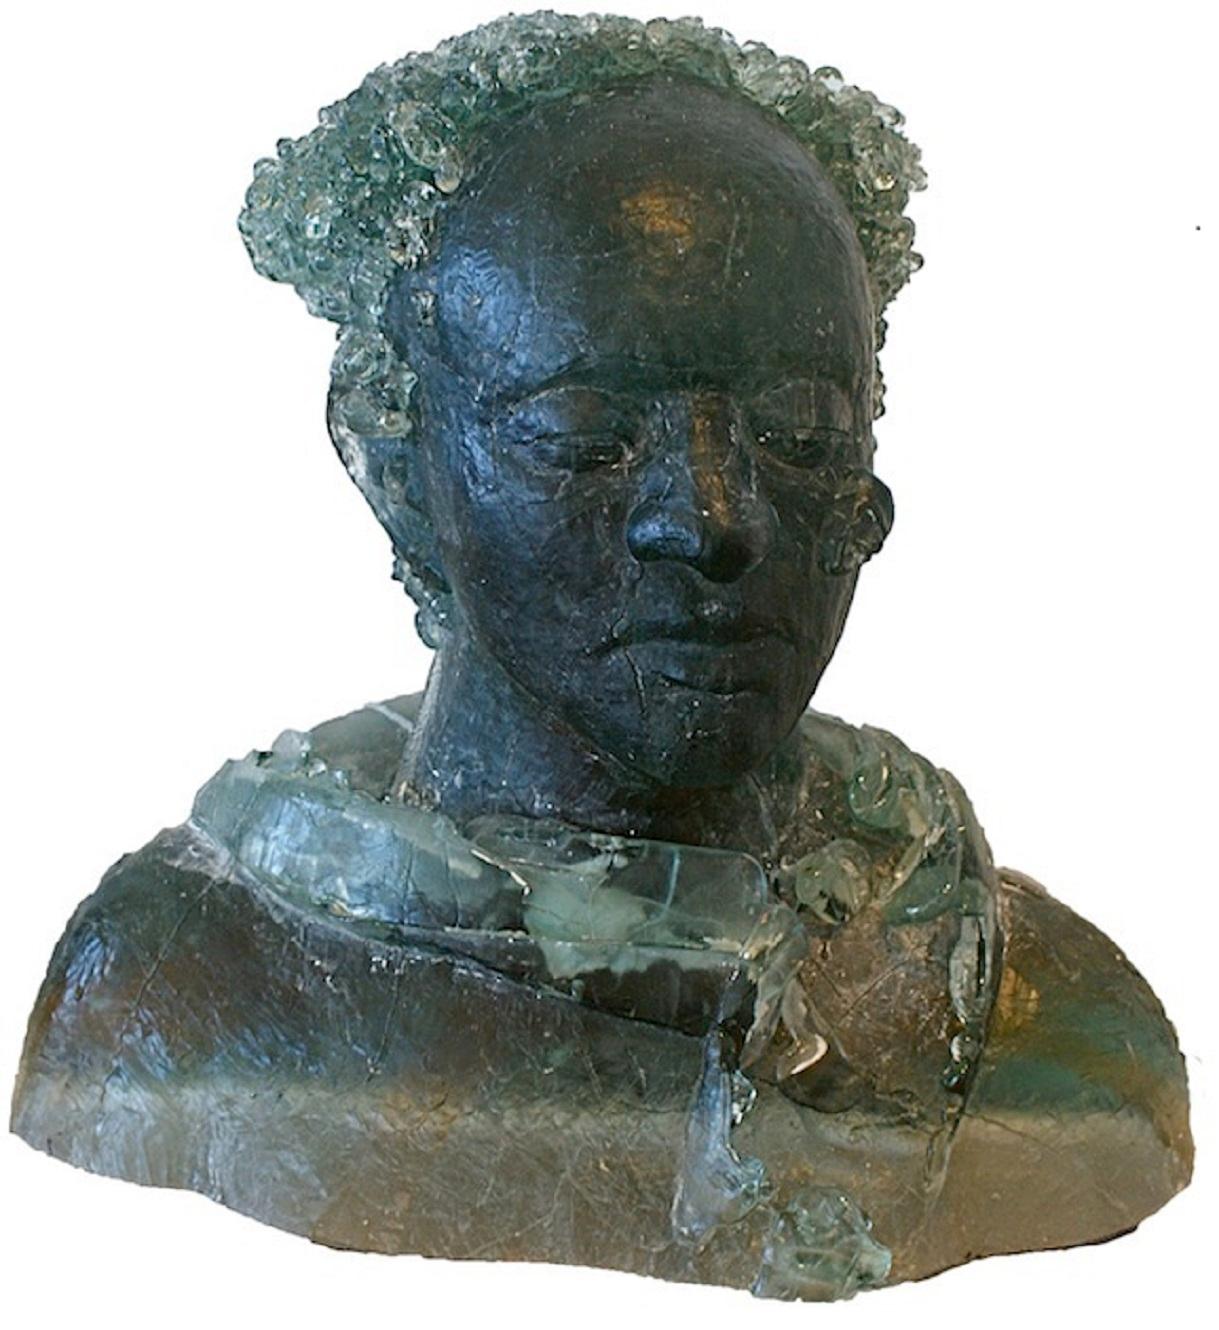 AMATO, MICAELA Figurative Sculpture - Nidea